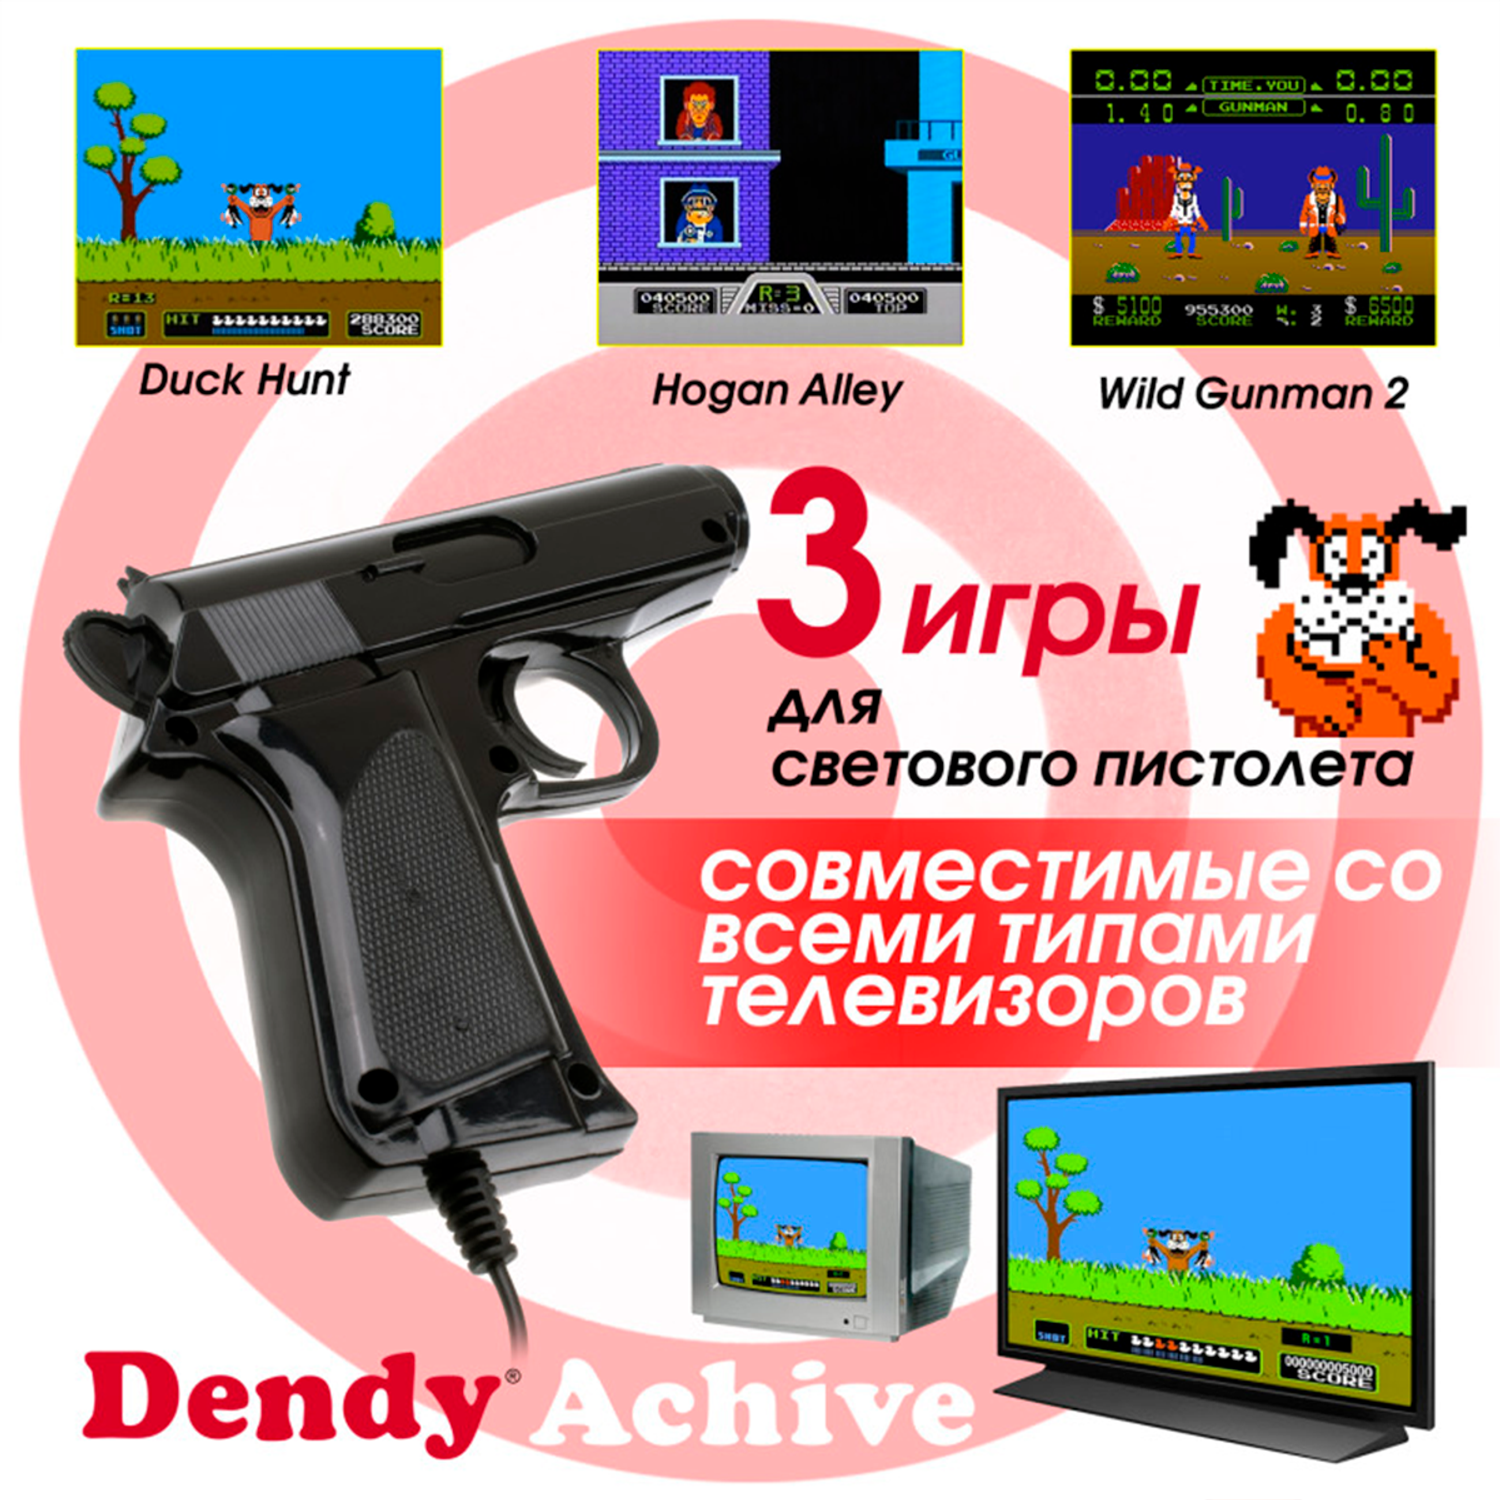 Игровая приставка Dendy Achive 640 игр и световой пистолет чёрная - фото 4